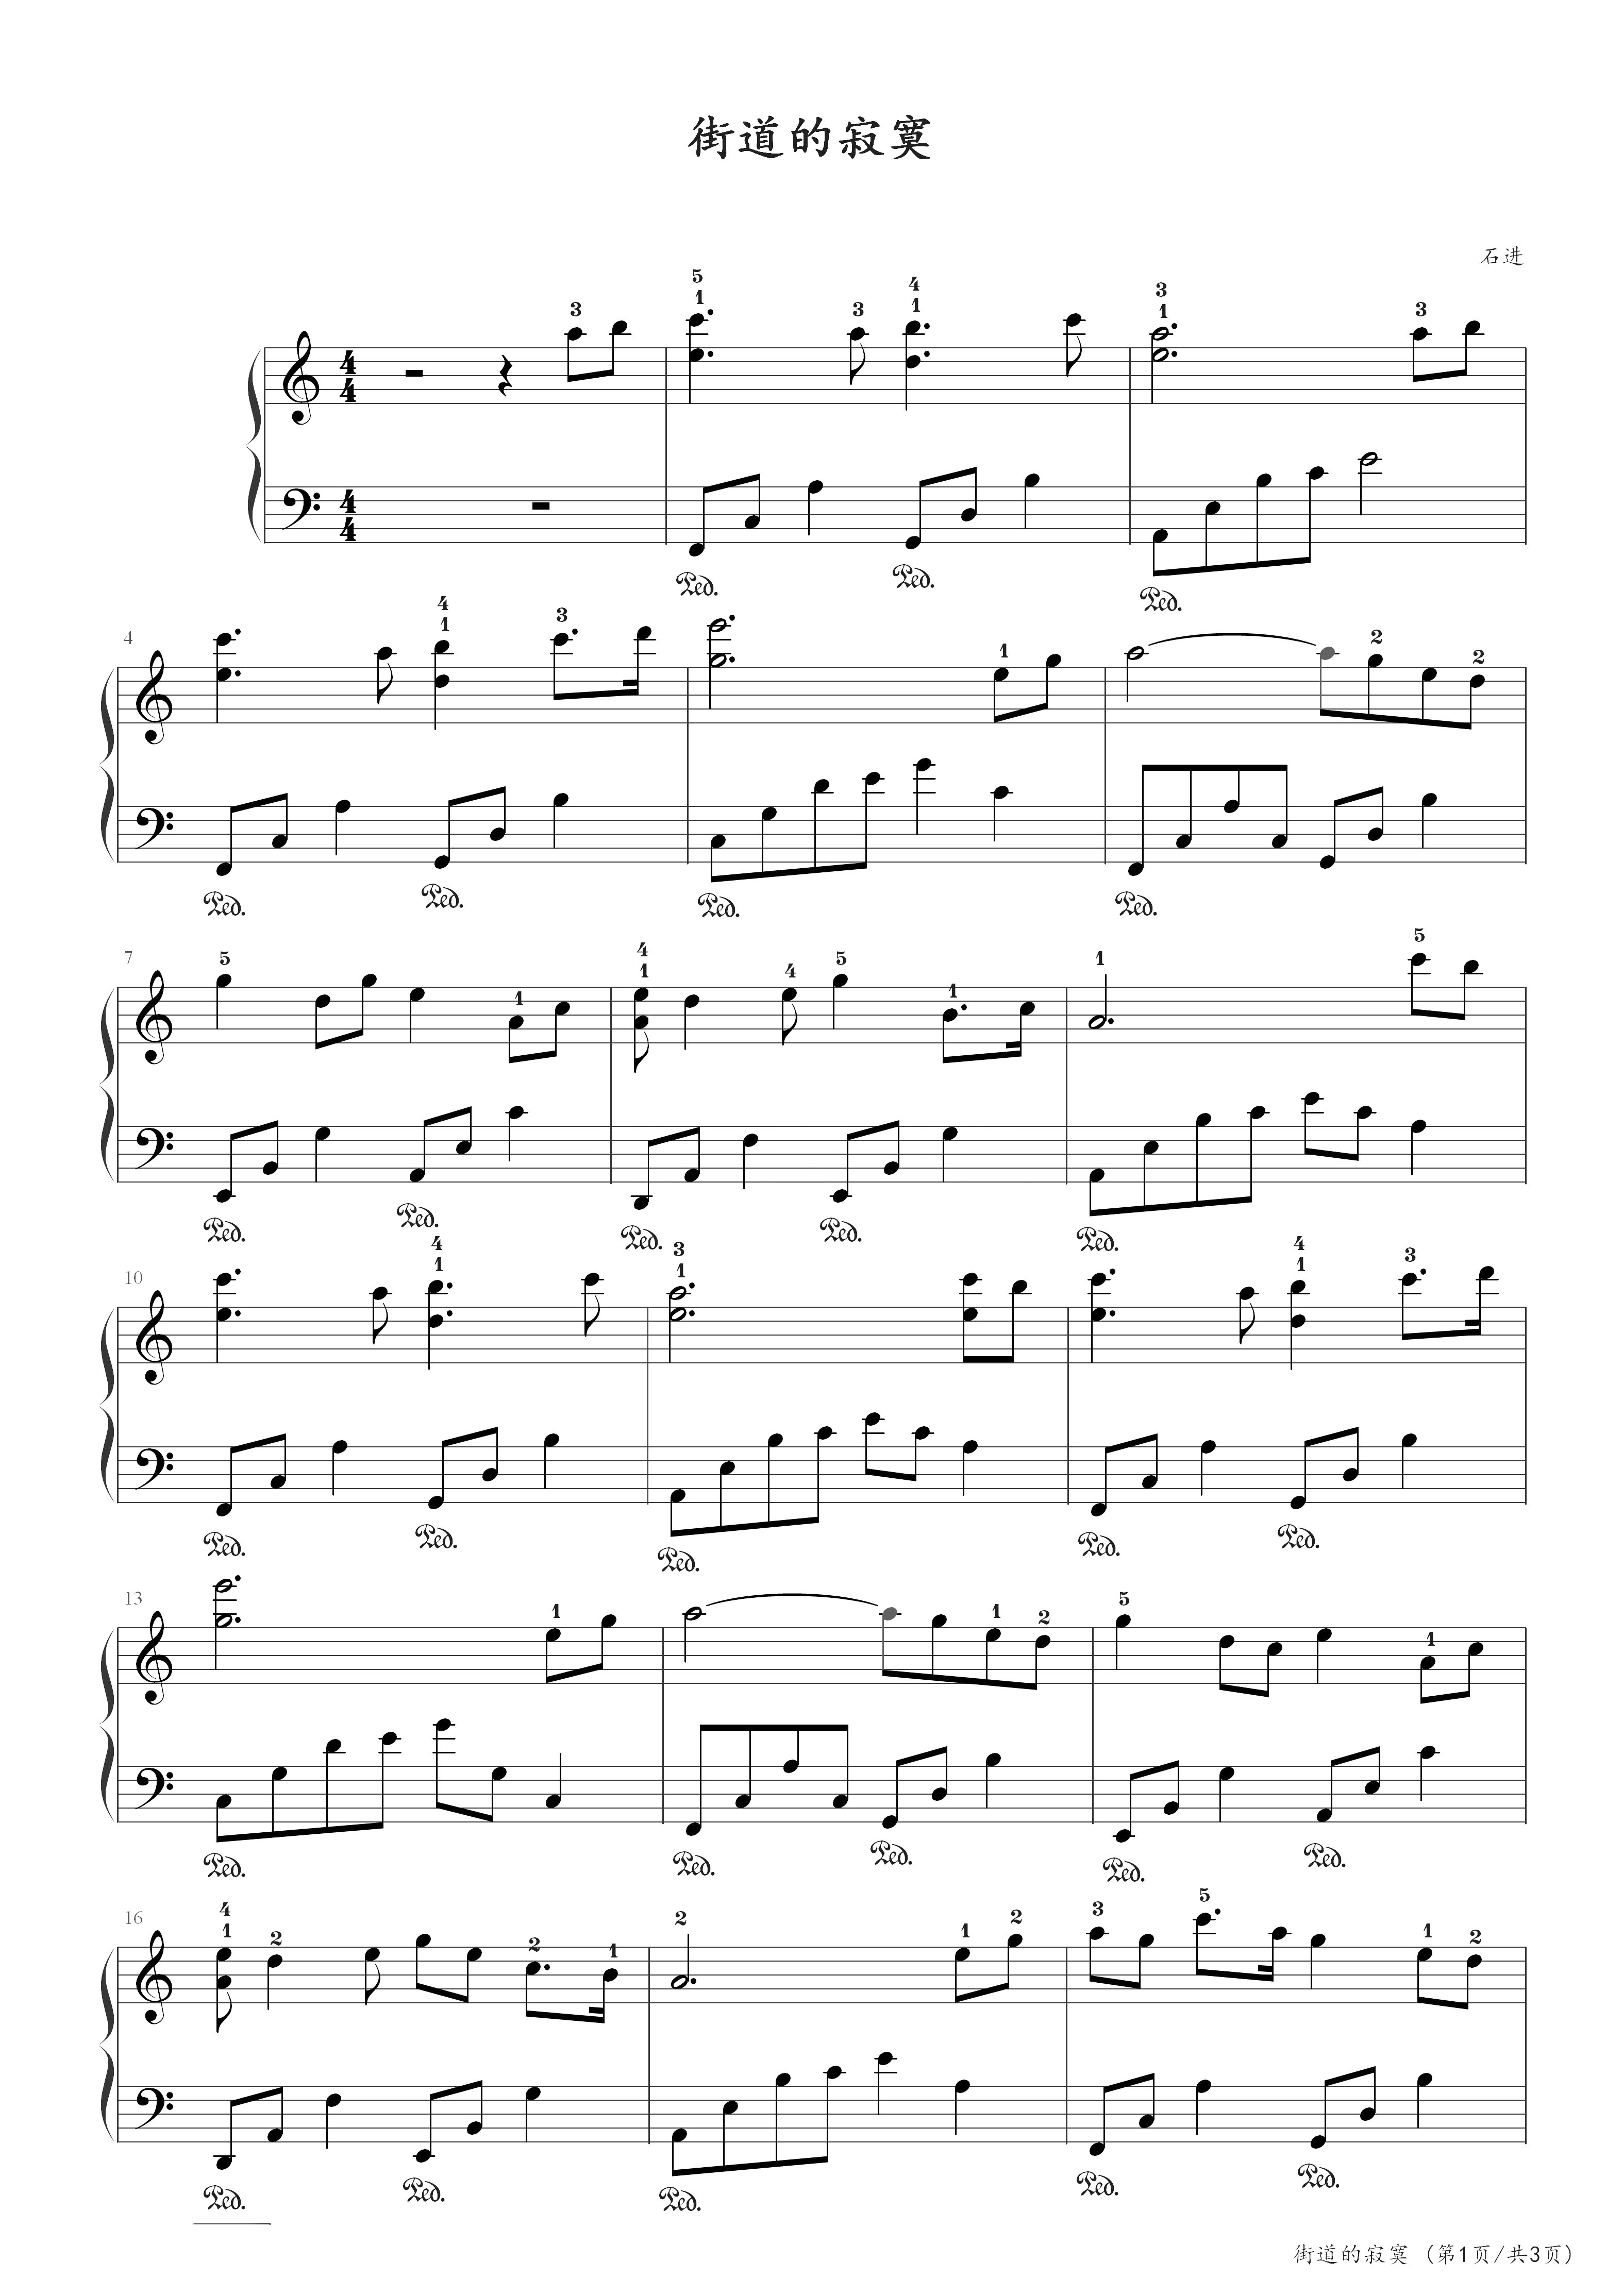 夜的钢琴曲5吉他谱（石进创作 简单版）-舒家吉他谱网